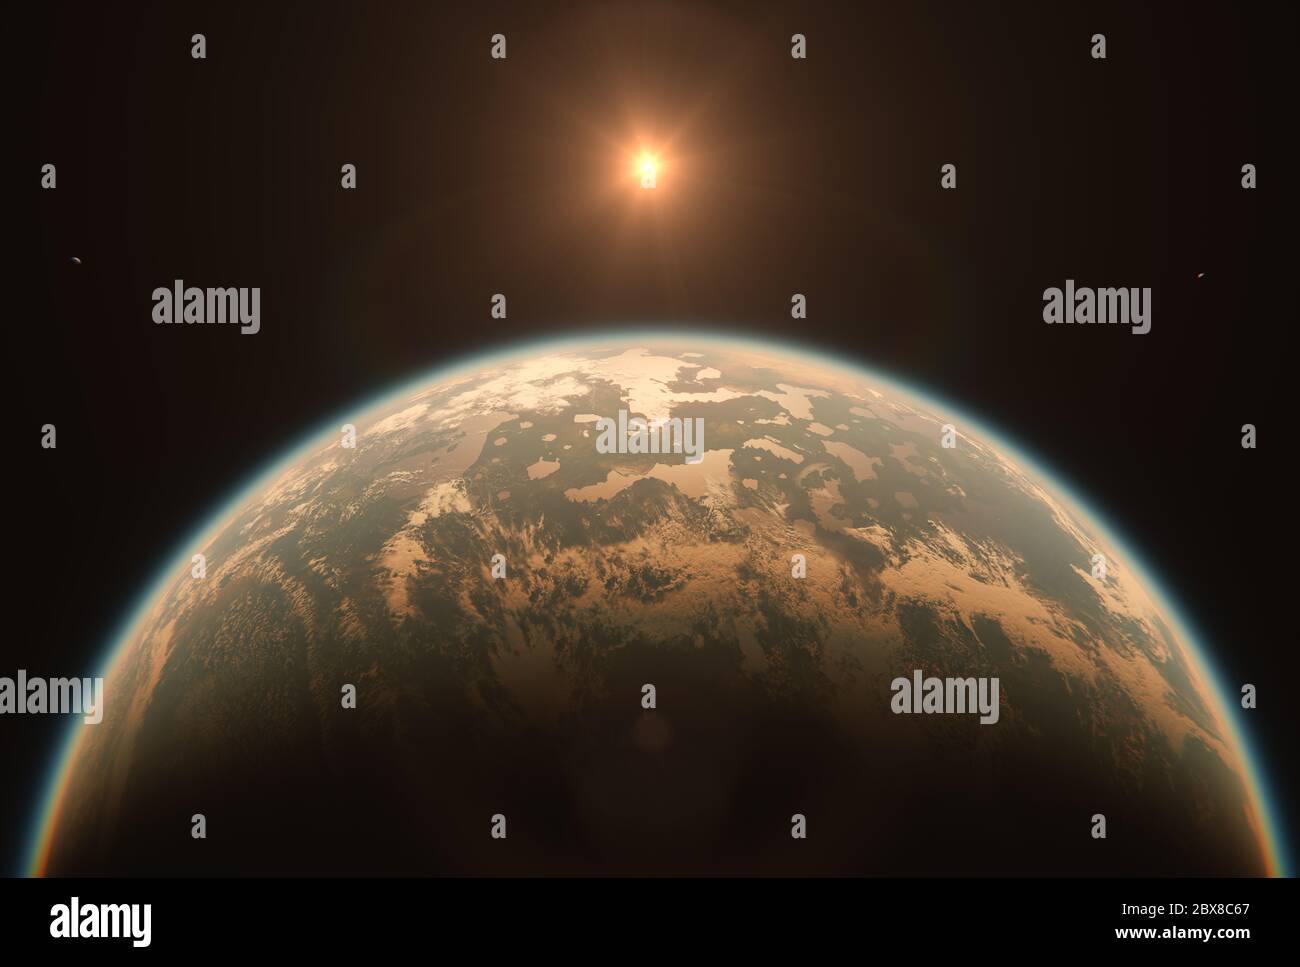 Horizont Landschaft bewohnbarer Erde wie Planet mit zwei Monden und Sonne im Weltraum - lebenswerter Exoplanet mit Doppelmond, der das Rote Zwergsystem umkreist Stockfoto